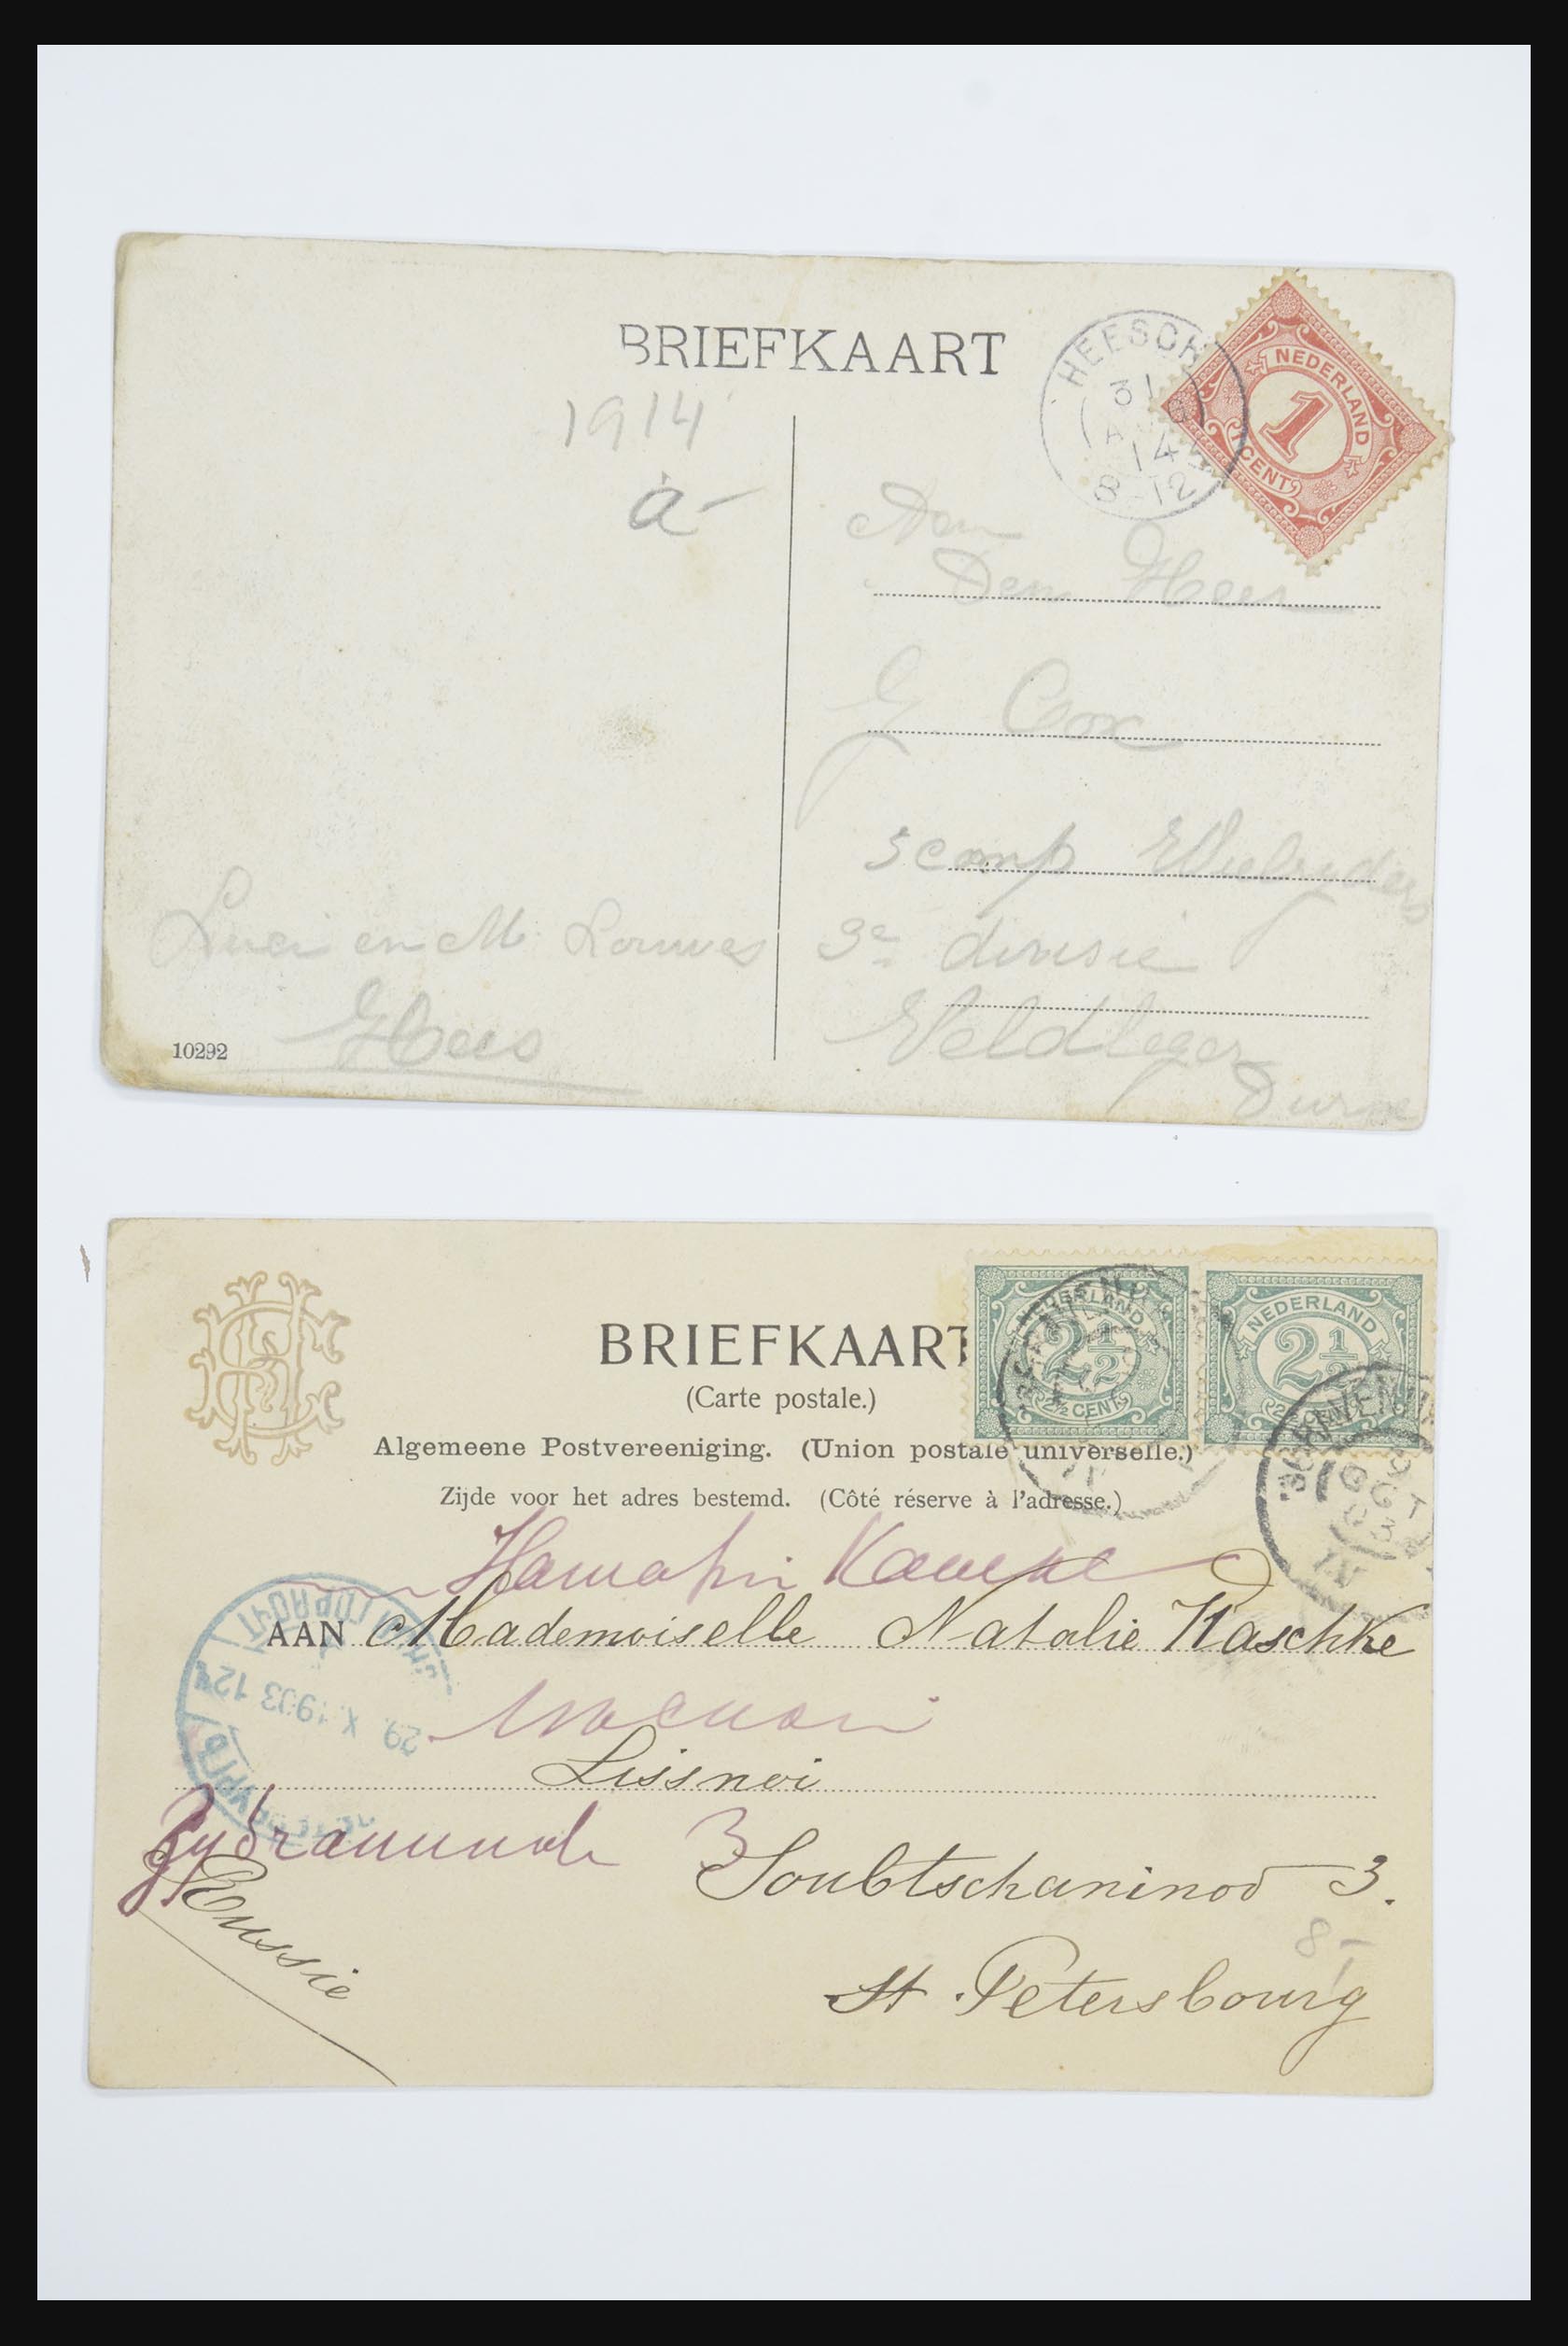 31668 069 - 31668 Nederland ansichtkaarten 1905-1935.